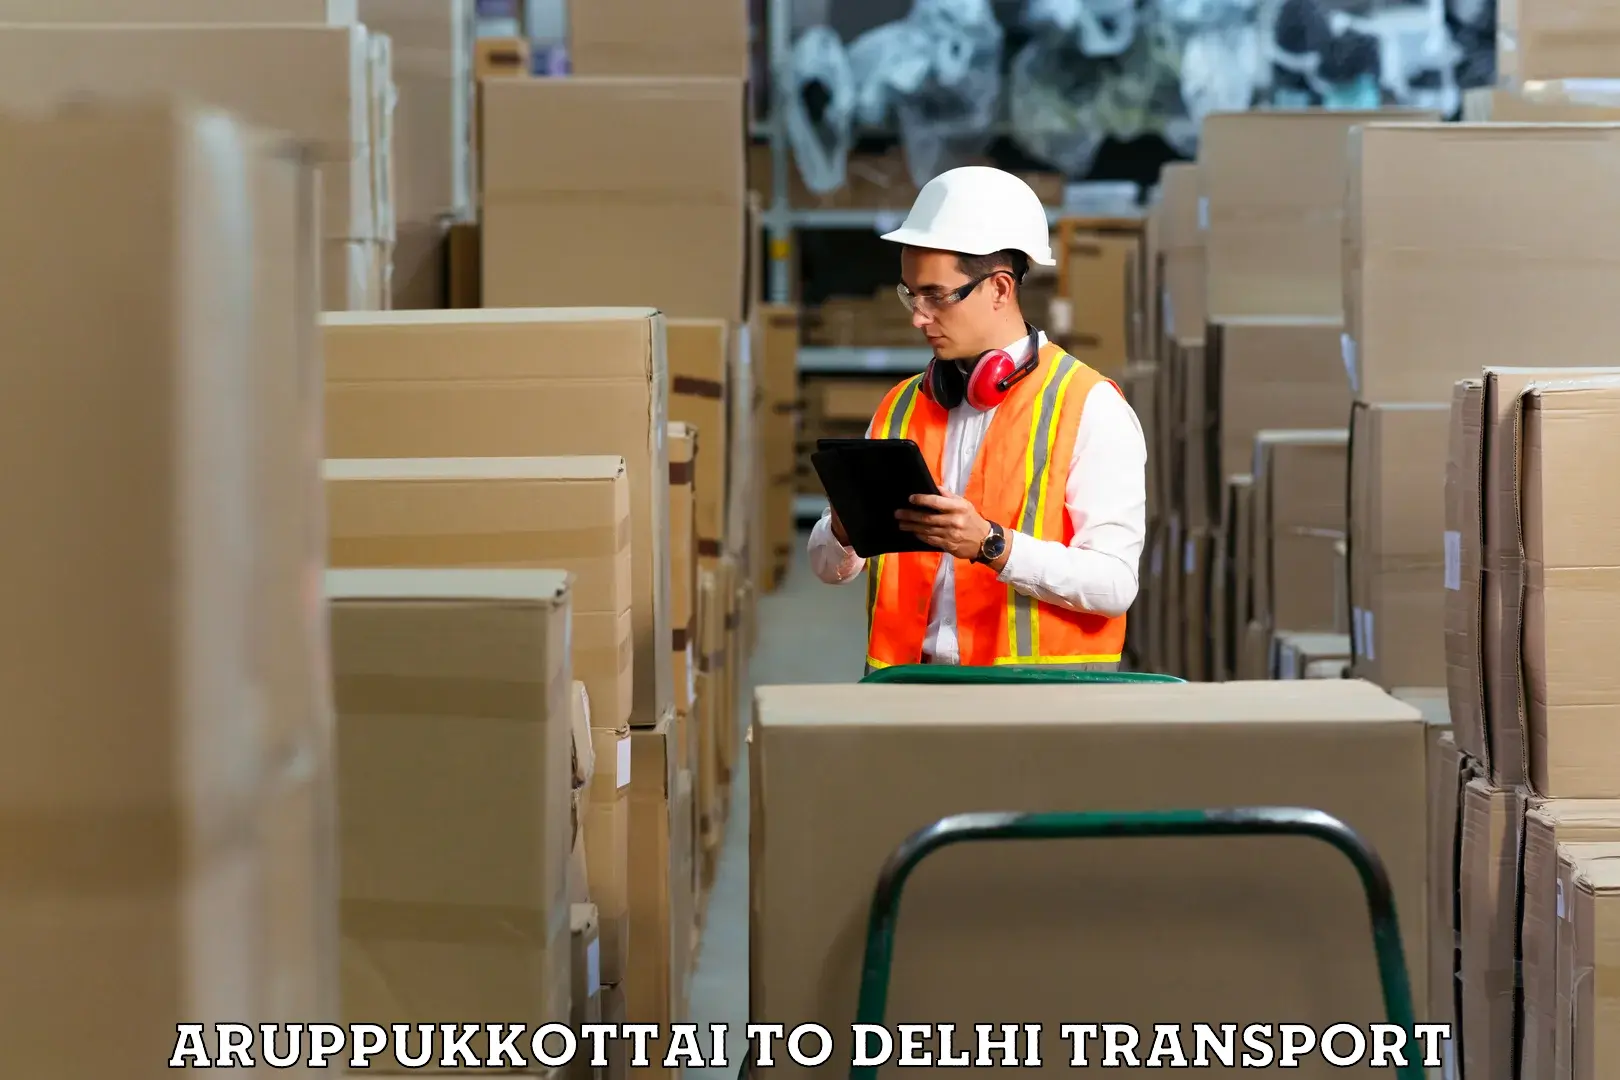 Online transport service Aruppukkottai to NIT Delhi